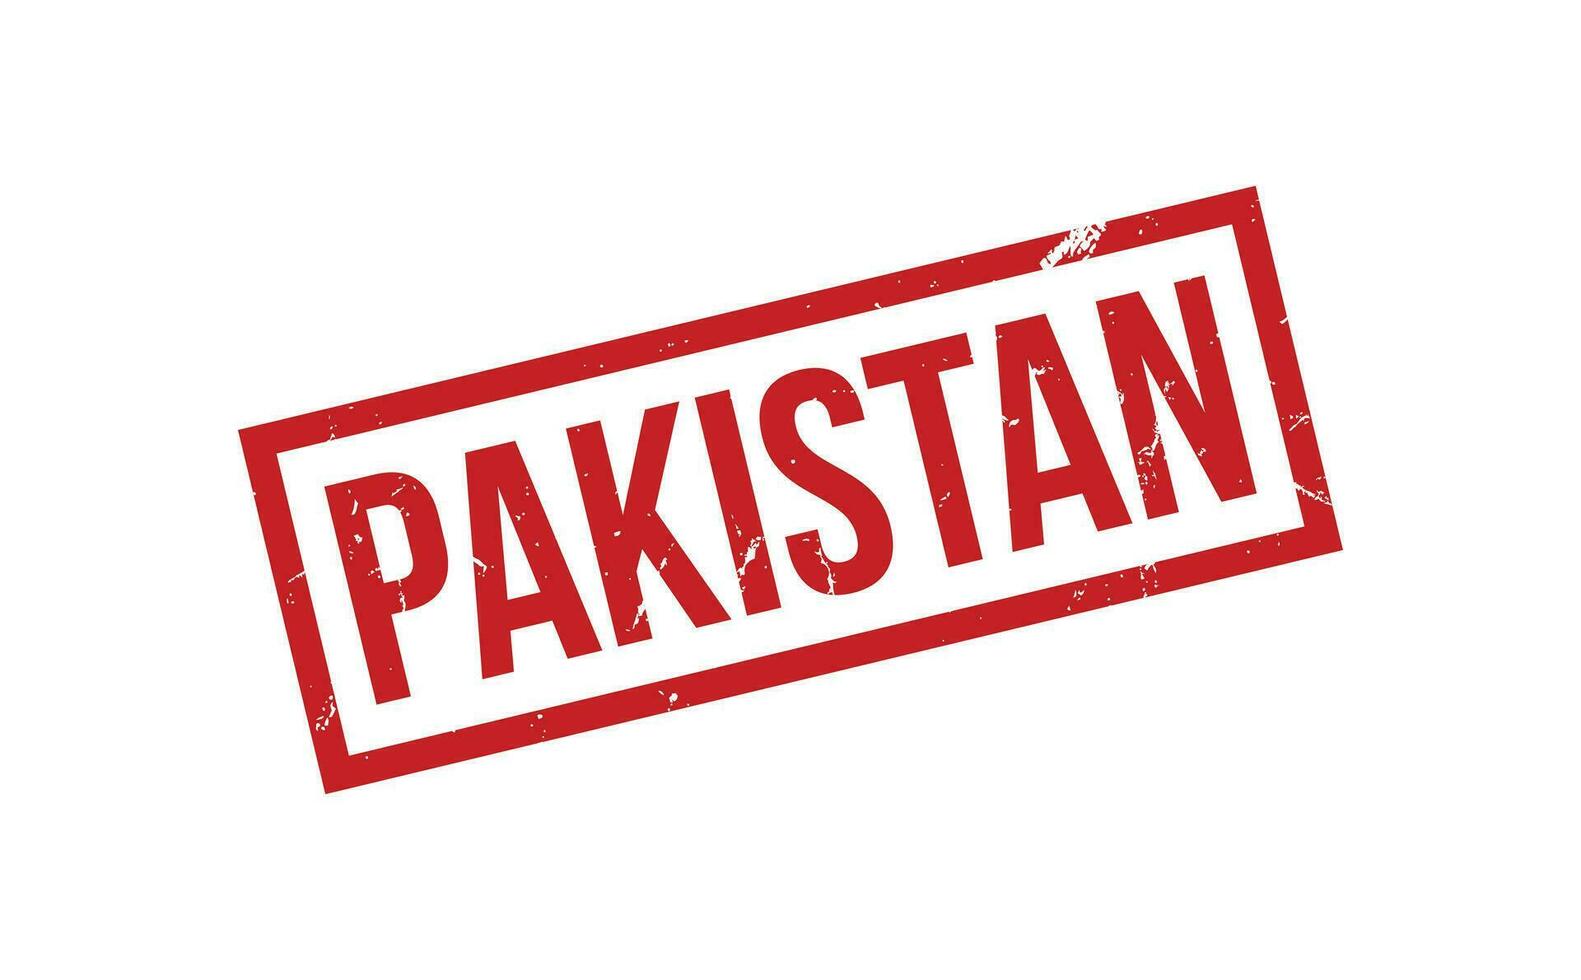 Pakistan gomma da cancellare francobollo foca vettore